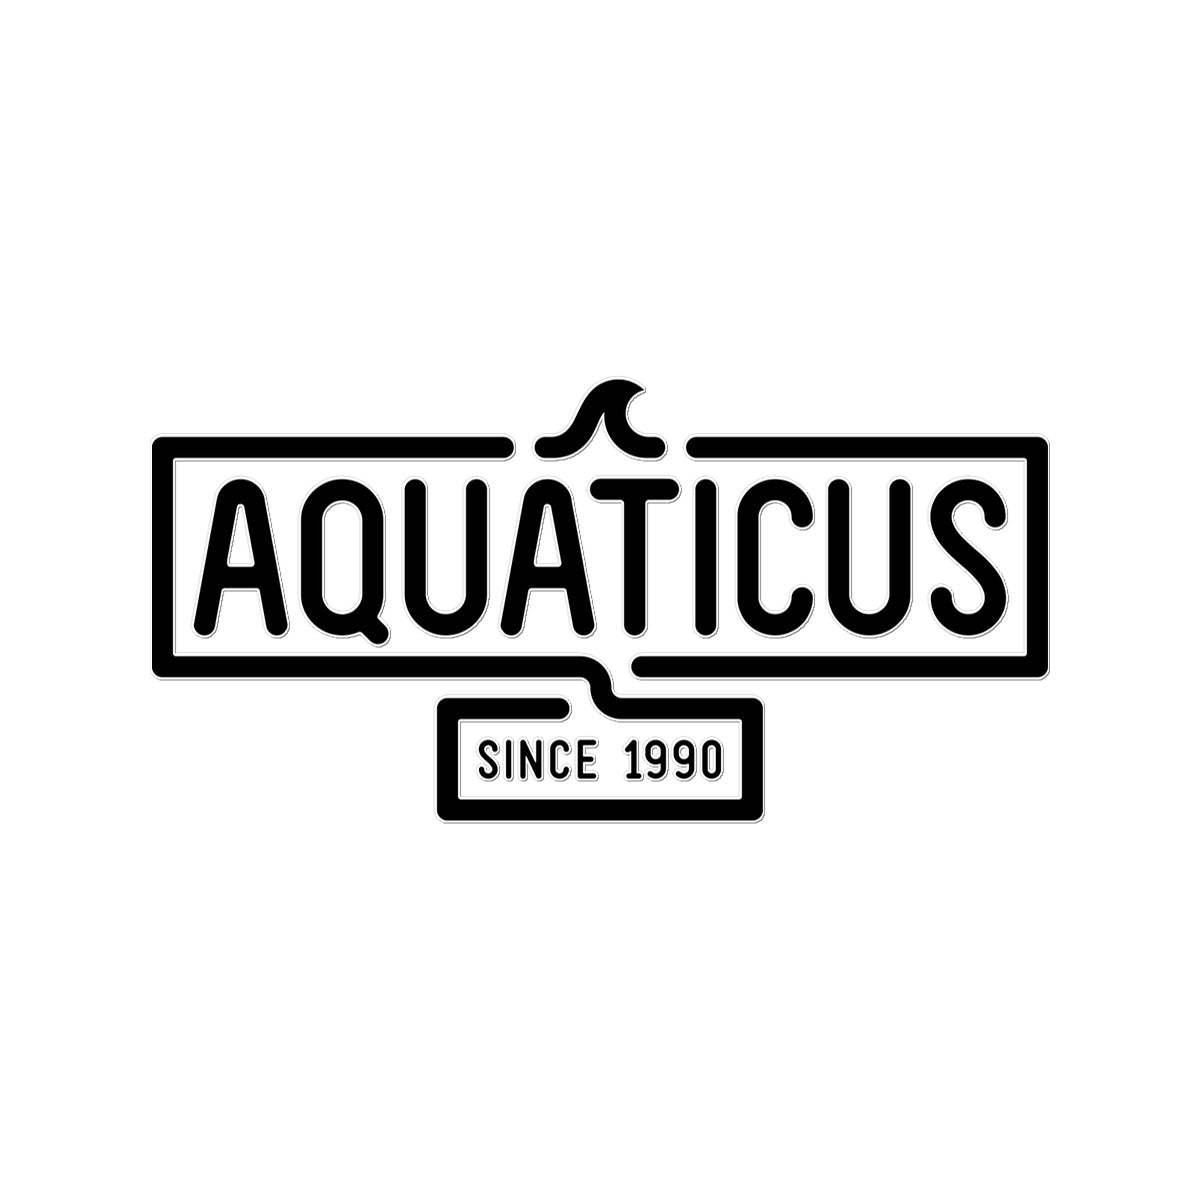 AQUA - 01- Aquaticus - Temporary Tattoo